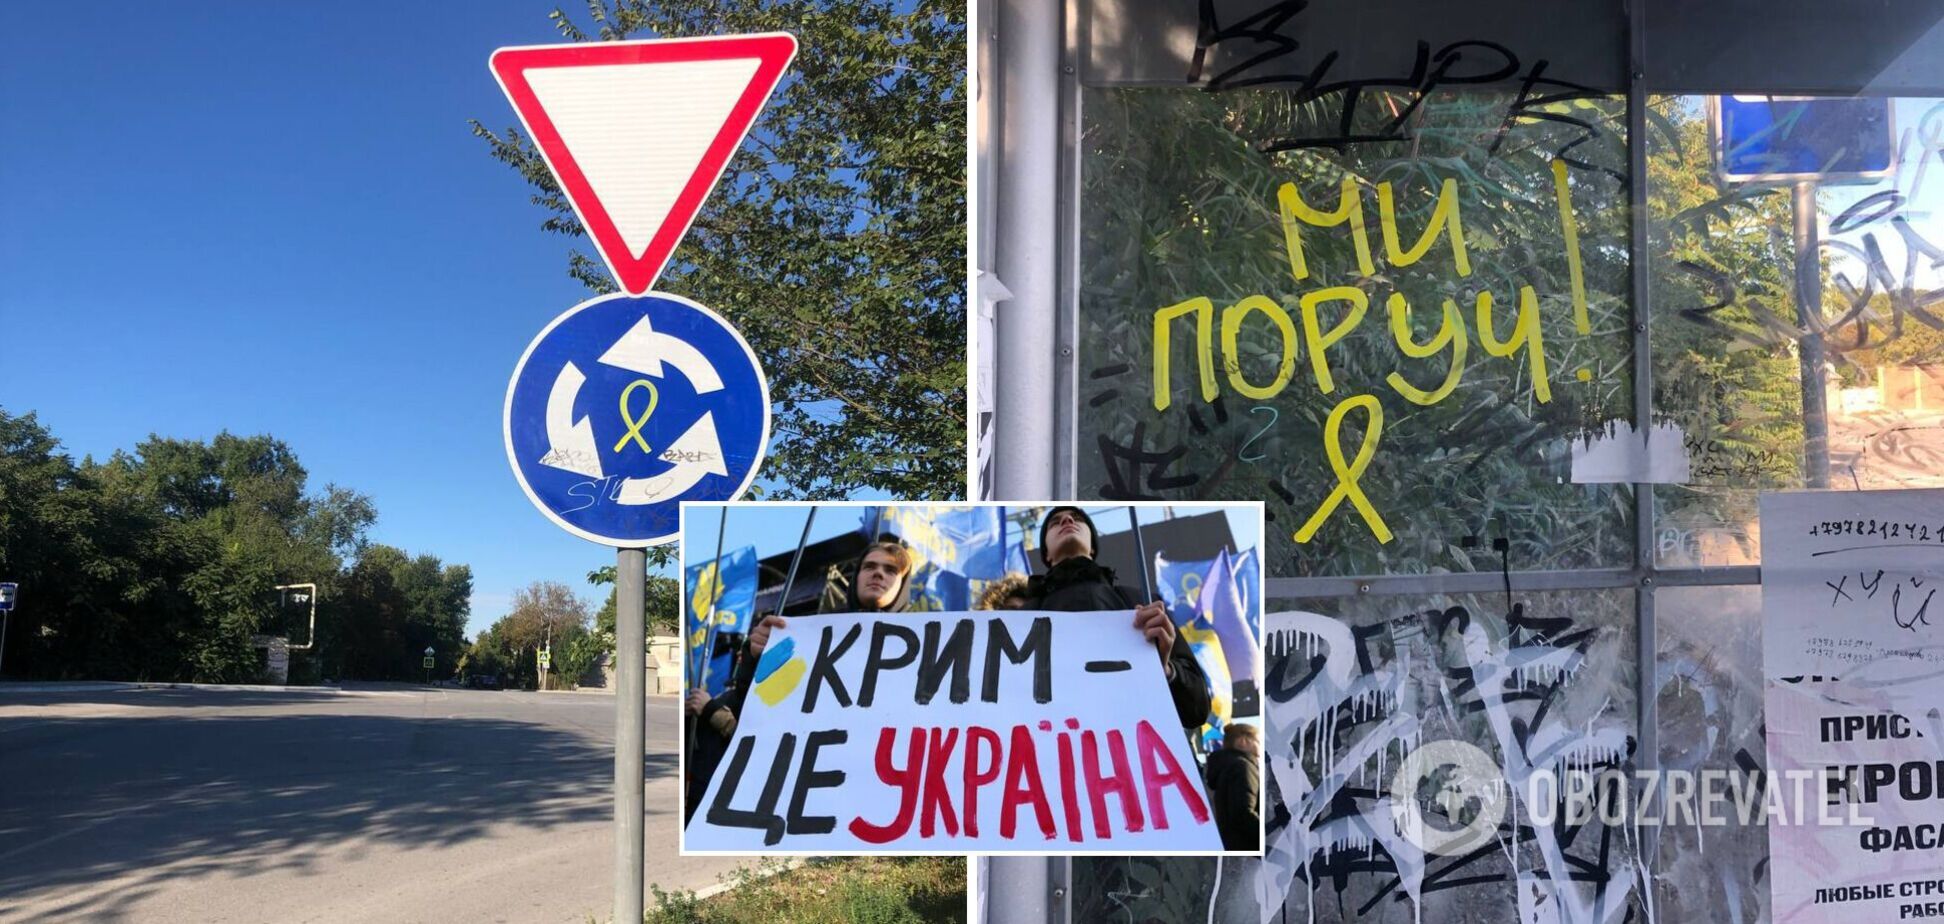 У Сімферополі проукраїнські активісти розгорнули активну роботу: в місті з'явилися патріотичні символи. Фото і відео